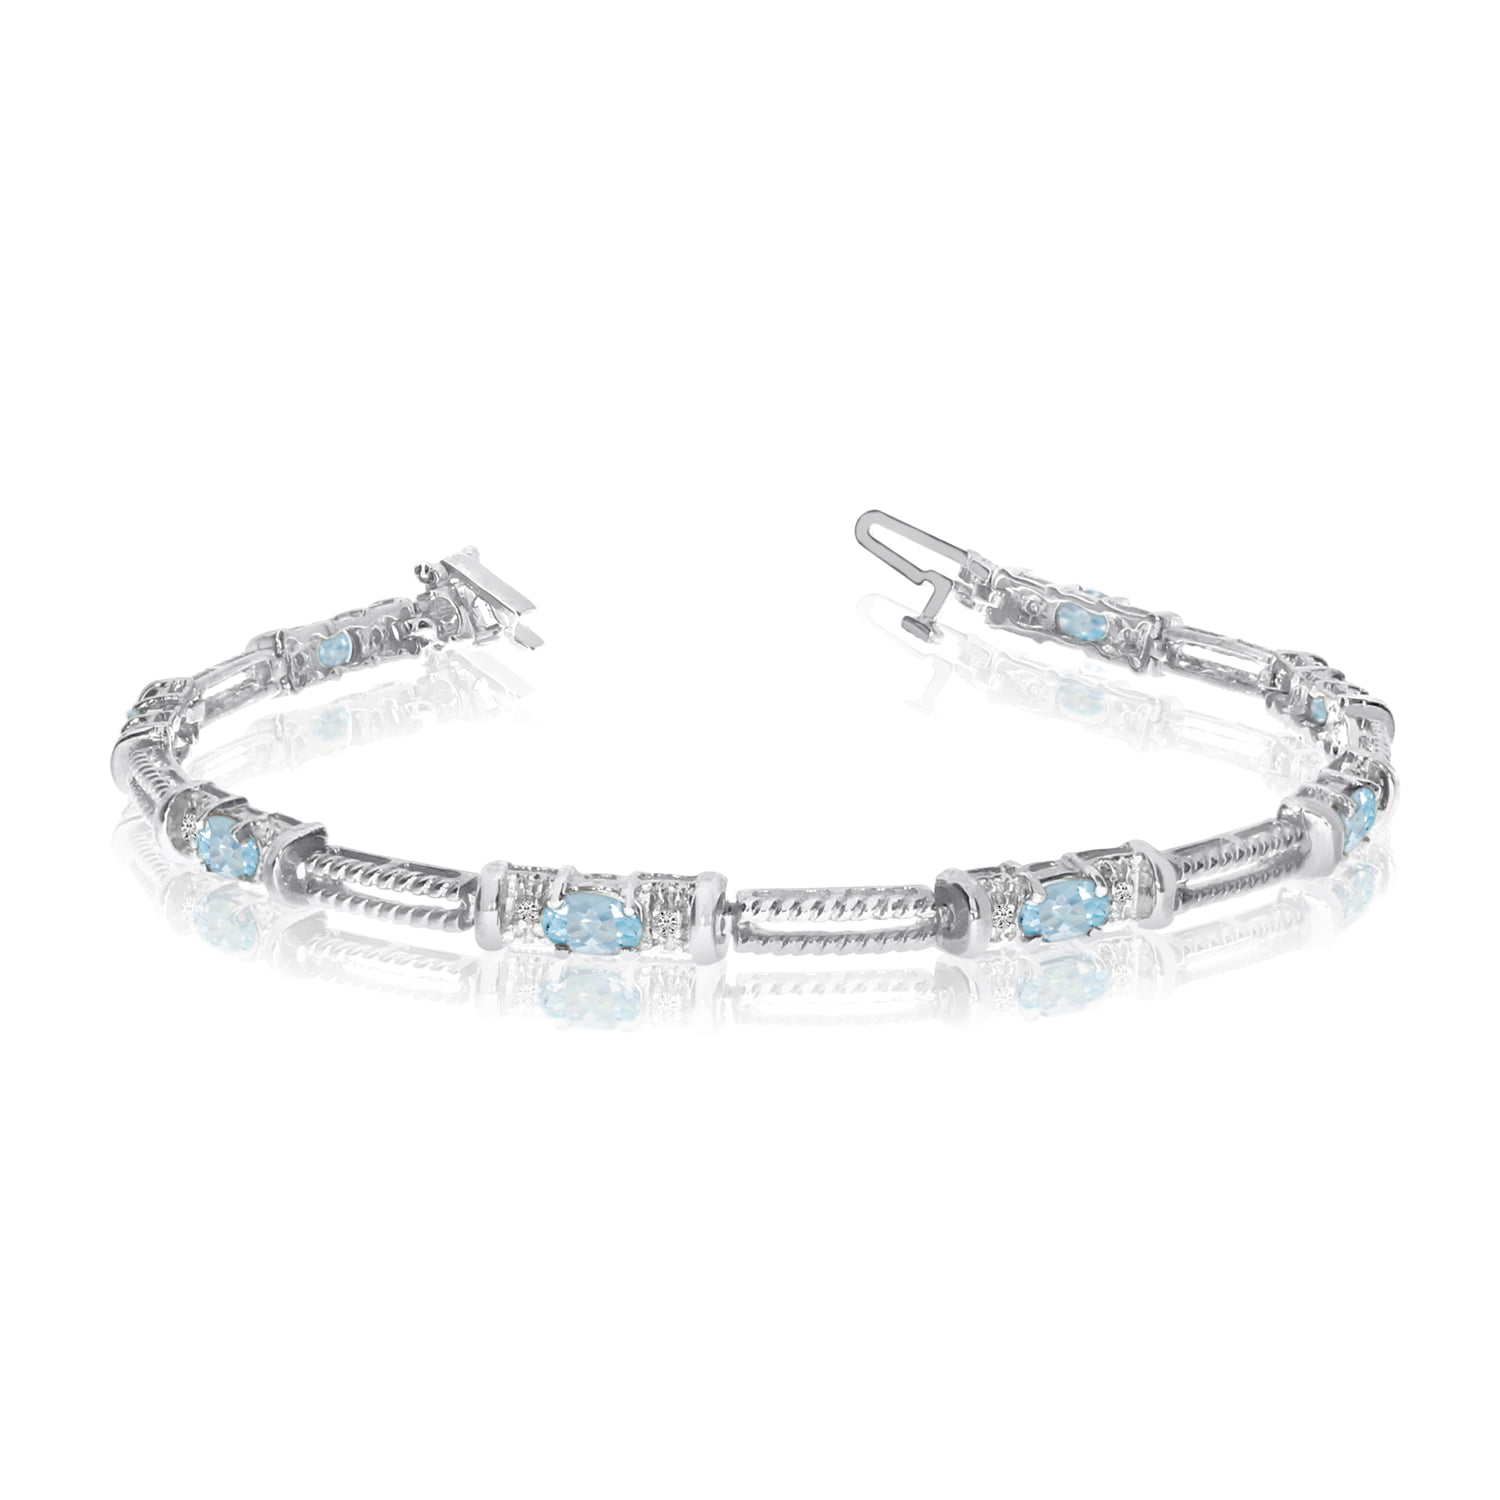 Edwardian Aquamarine and Diamond Bracelet